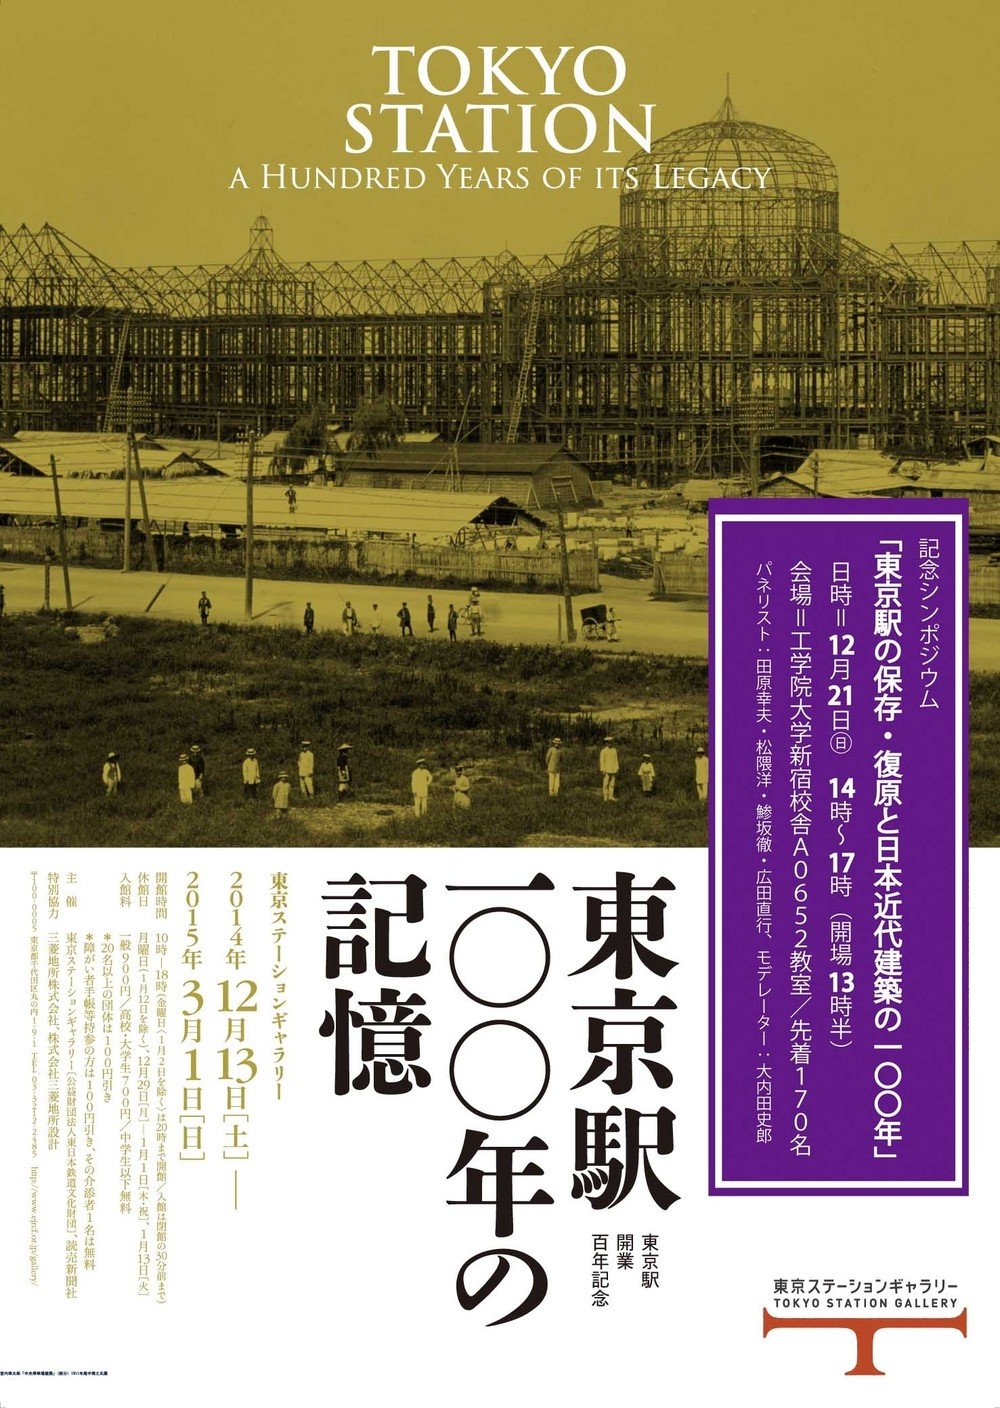 「東京駅100年の記憶」展、来年3月まで　工学院大学でシンポジウム開催